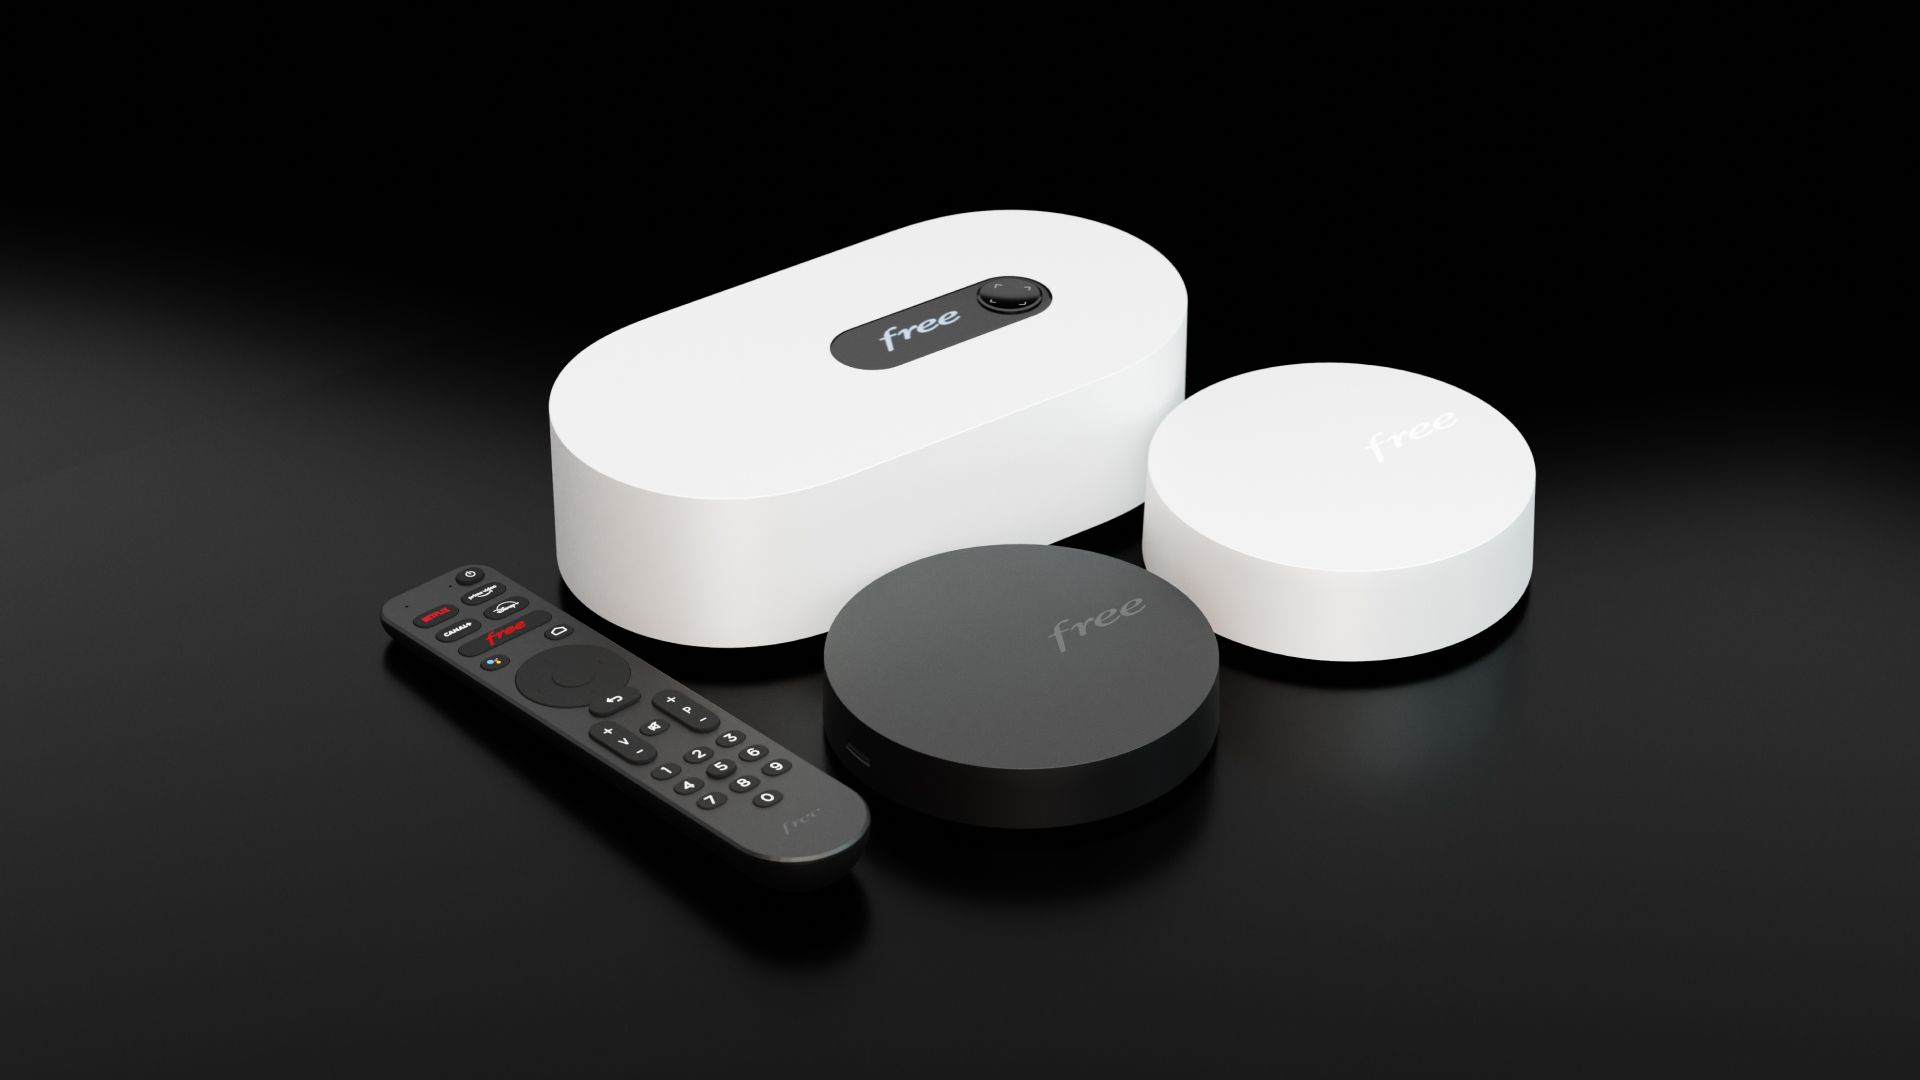 La Freebox Révolution permet maintenant de contrôler vos équipements (TV  HD, ampli) depuis la télécommande !! - Le Journal du Numérique